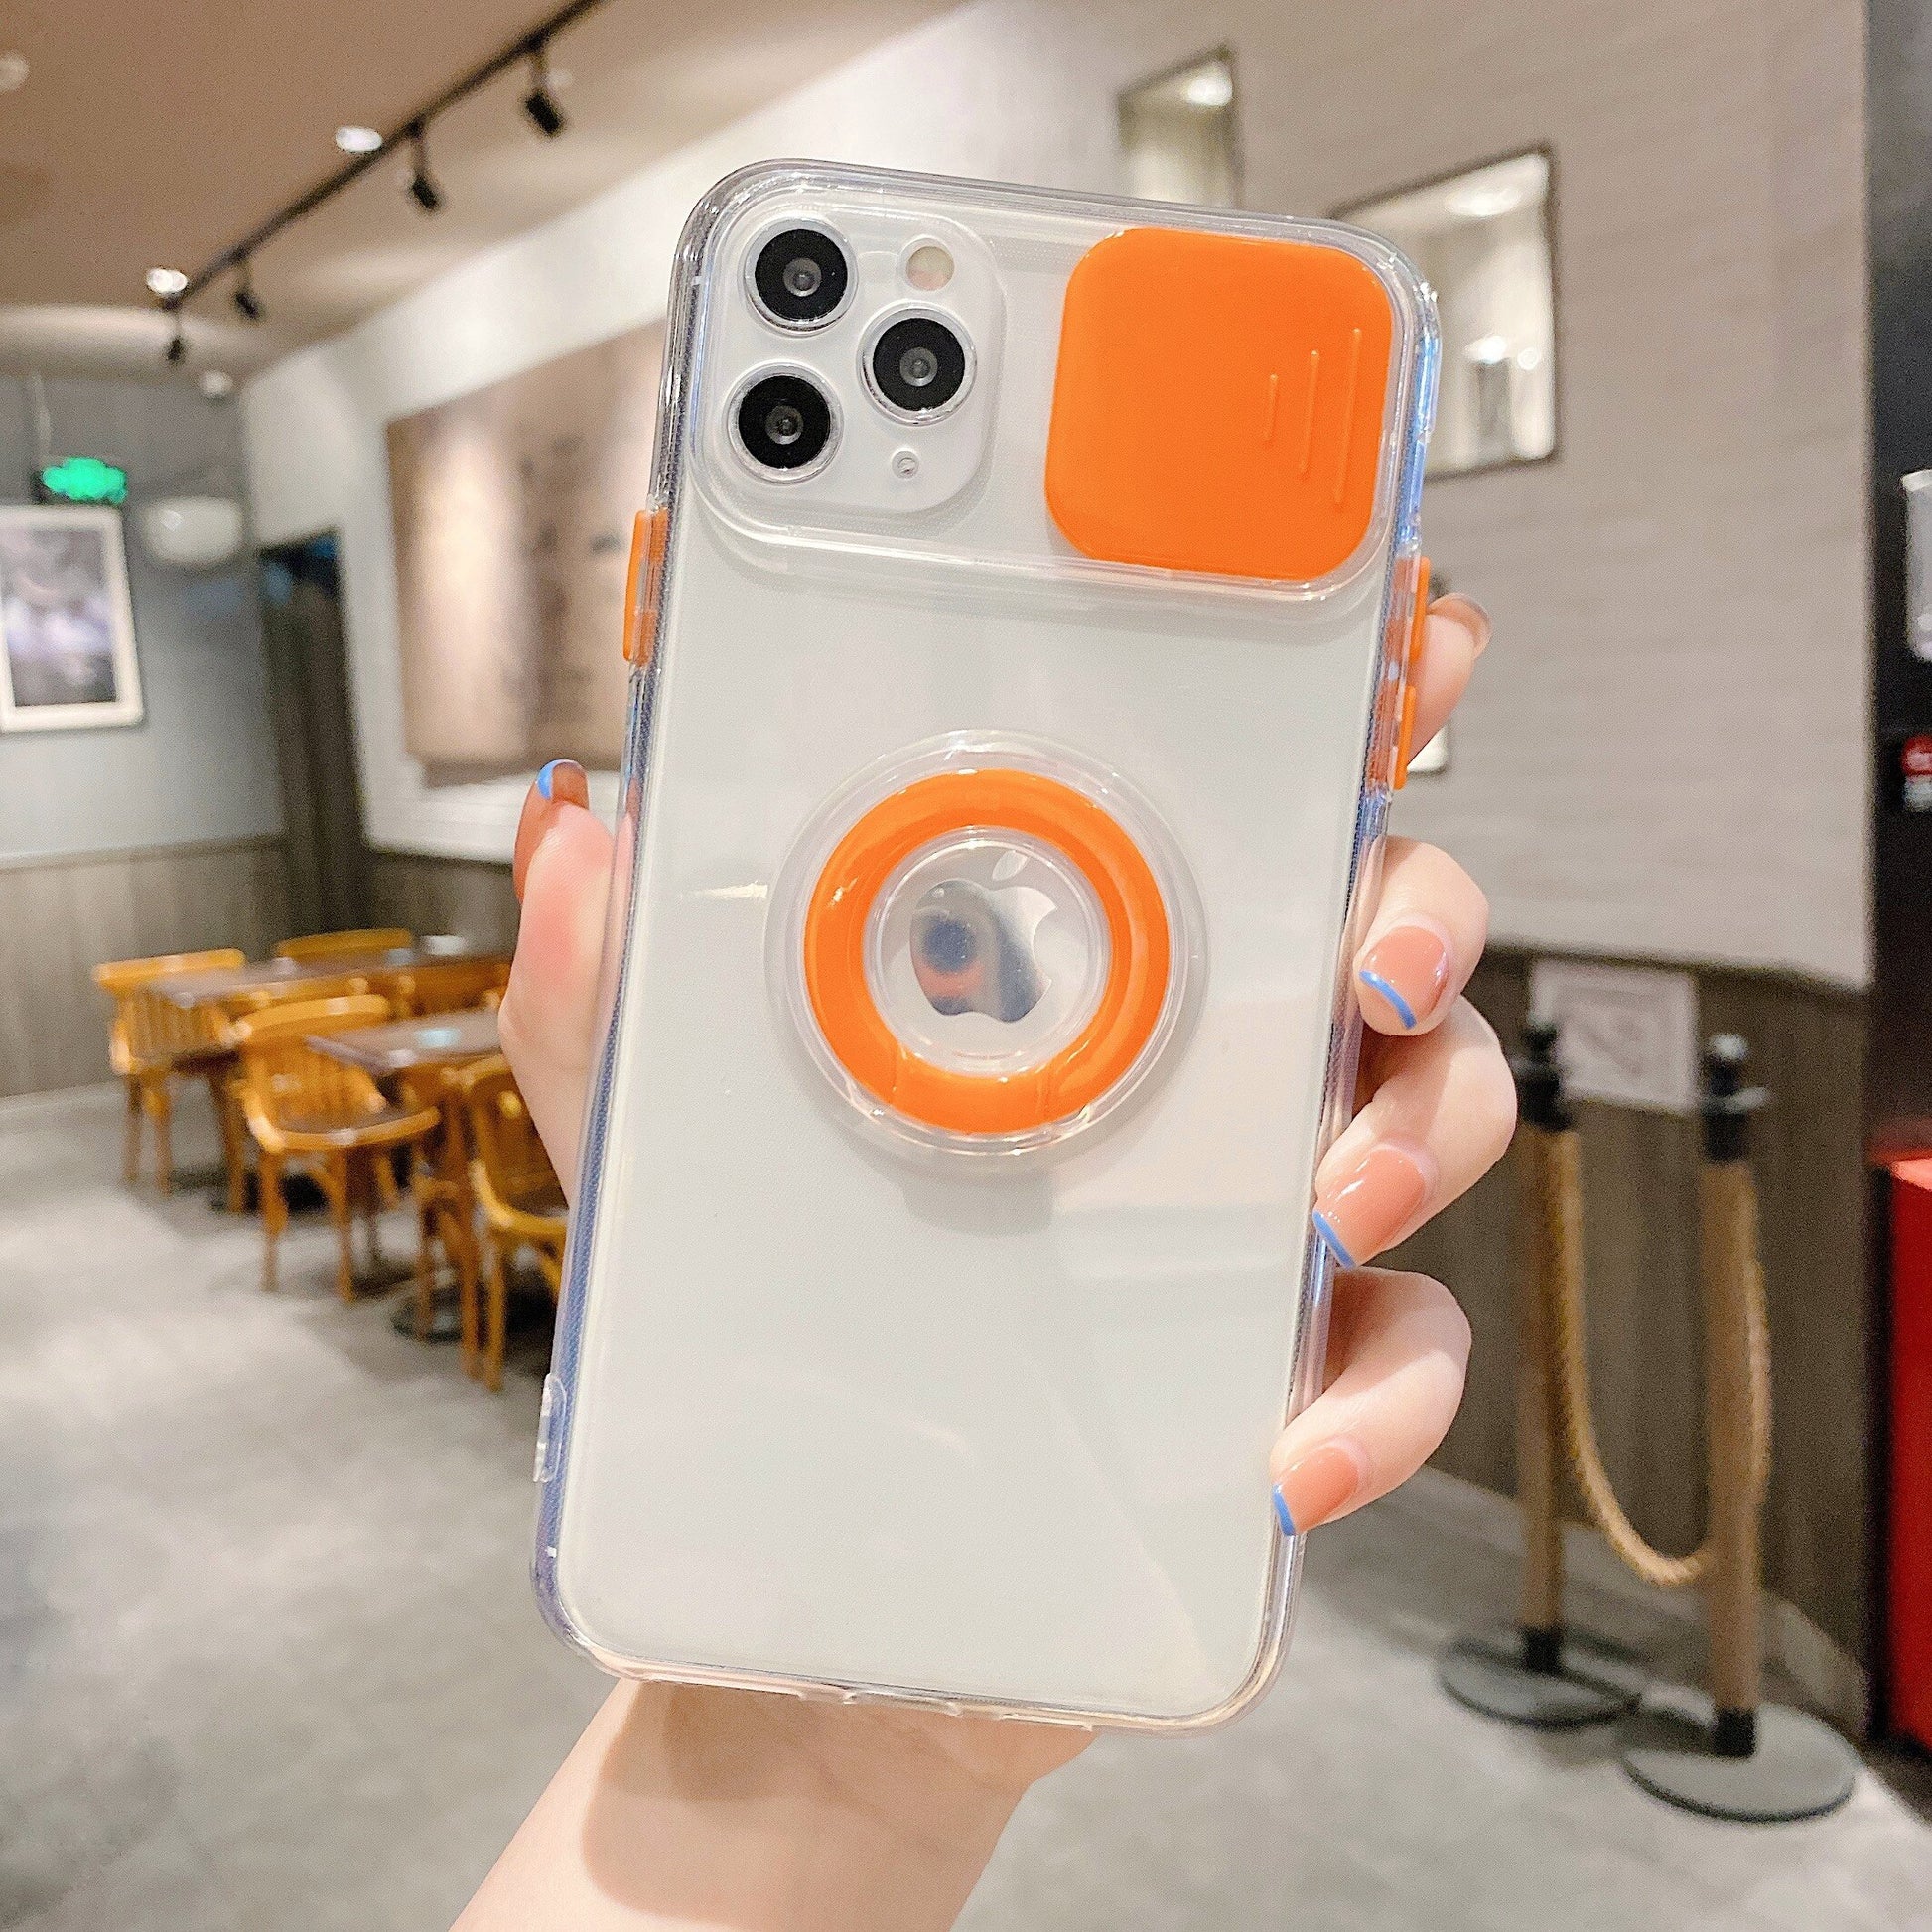 Modische iPhone Hülle mit Kameraabdeckung und Ringhalterung in orange